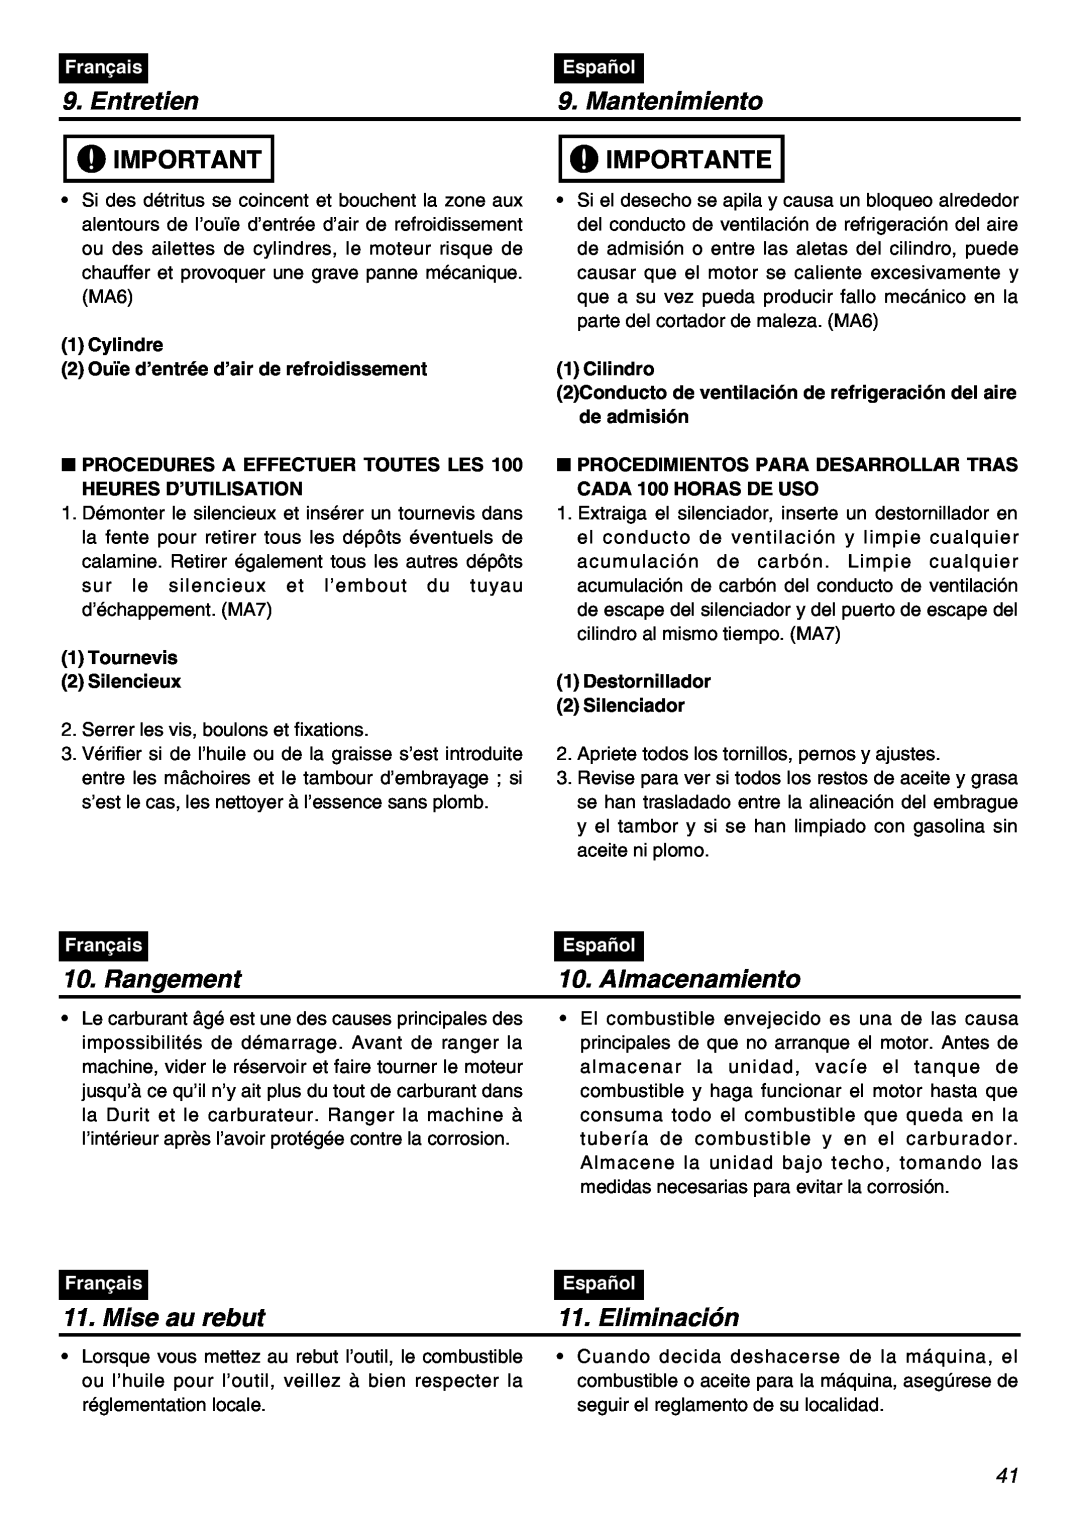 Zenoah BT250 manual Rangement, Almacenamiento, Mise au rebut, Eliminación, Entretien, Mantenimiento, Importante, Français 